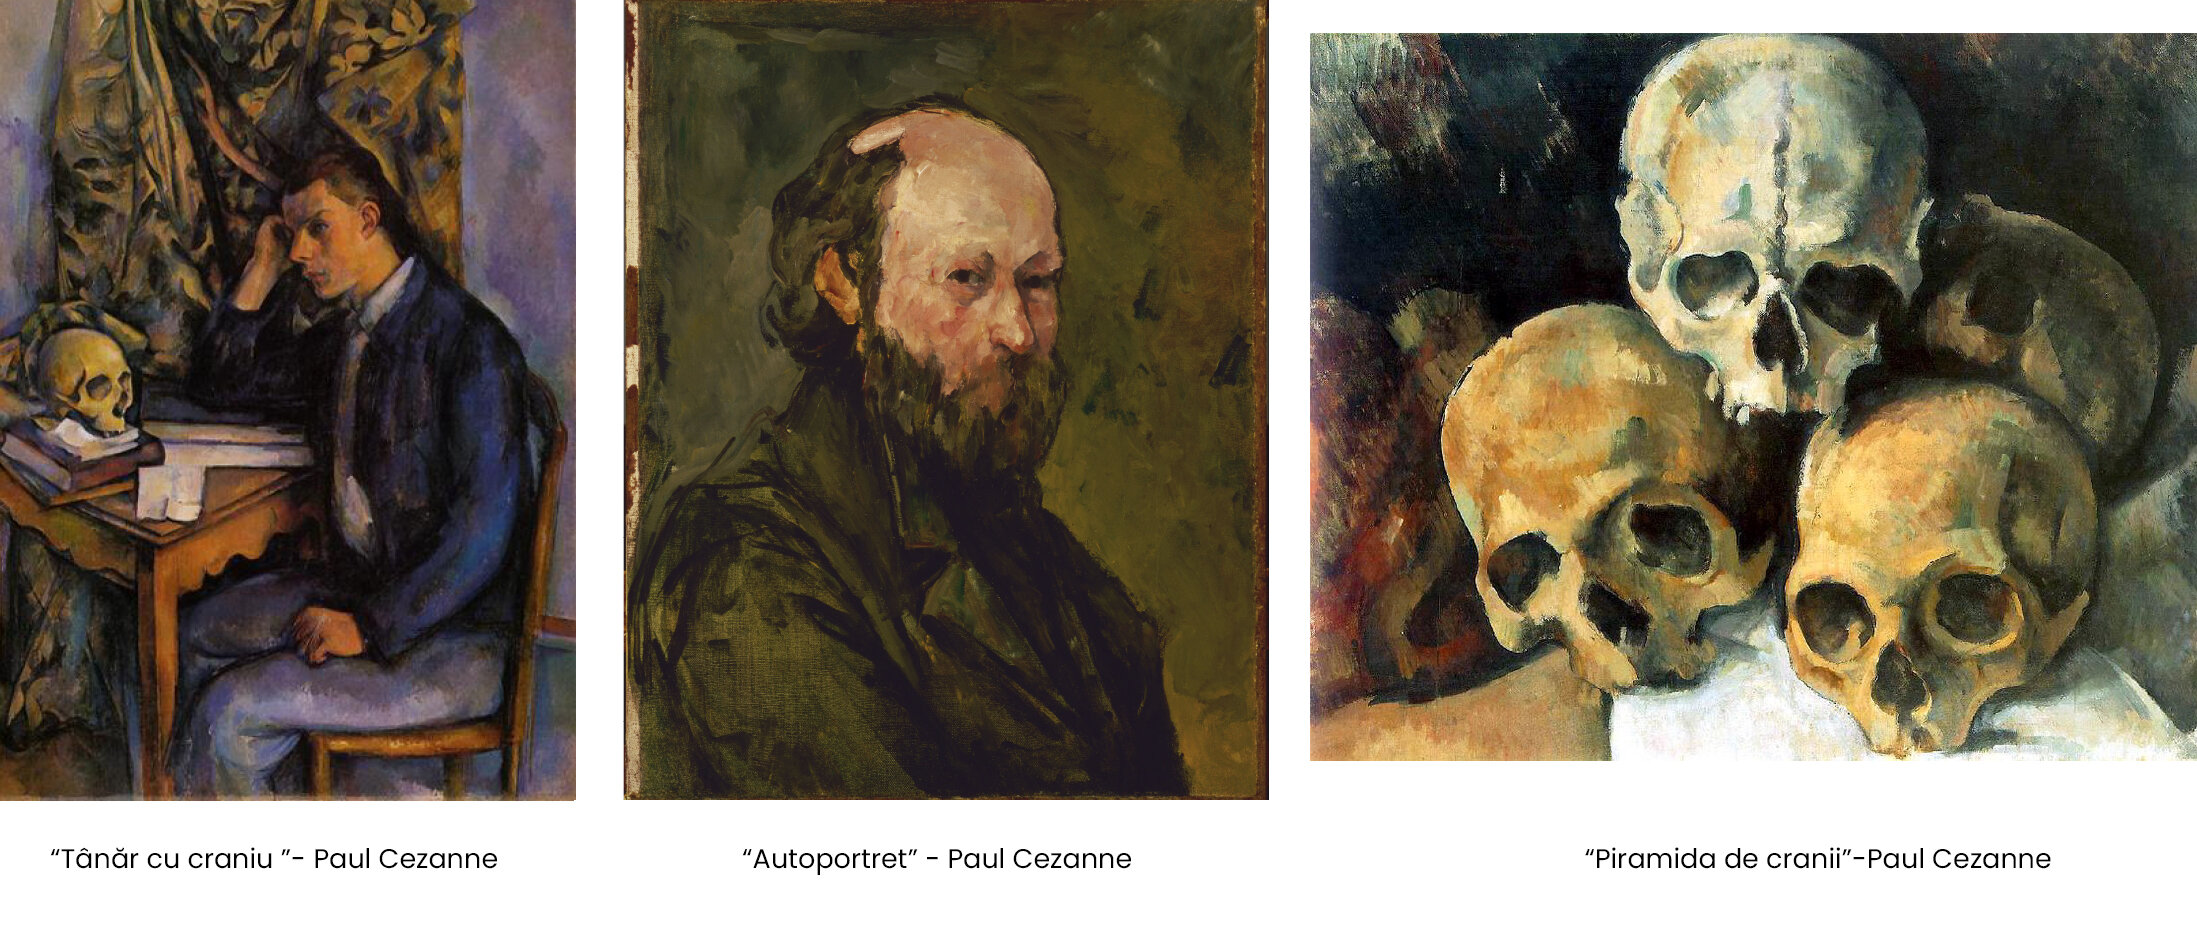 “Tânăr cu craniu ”- Paul Cezanne “Autoportret” - Paul Cezanne